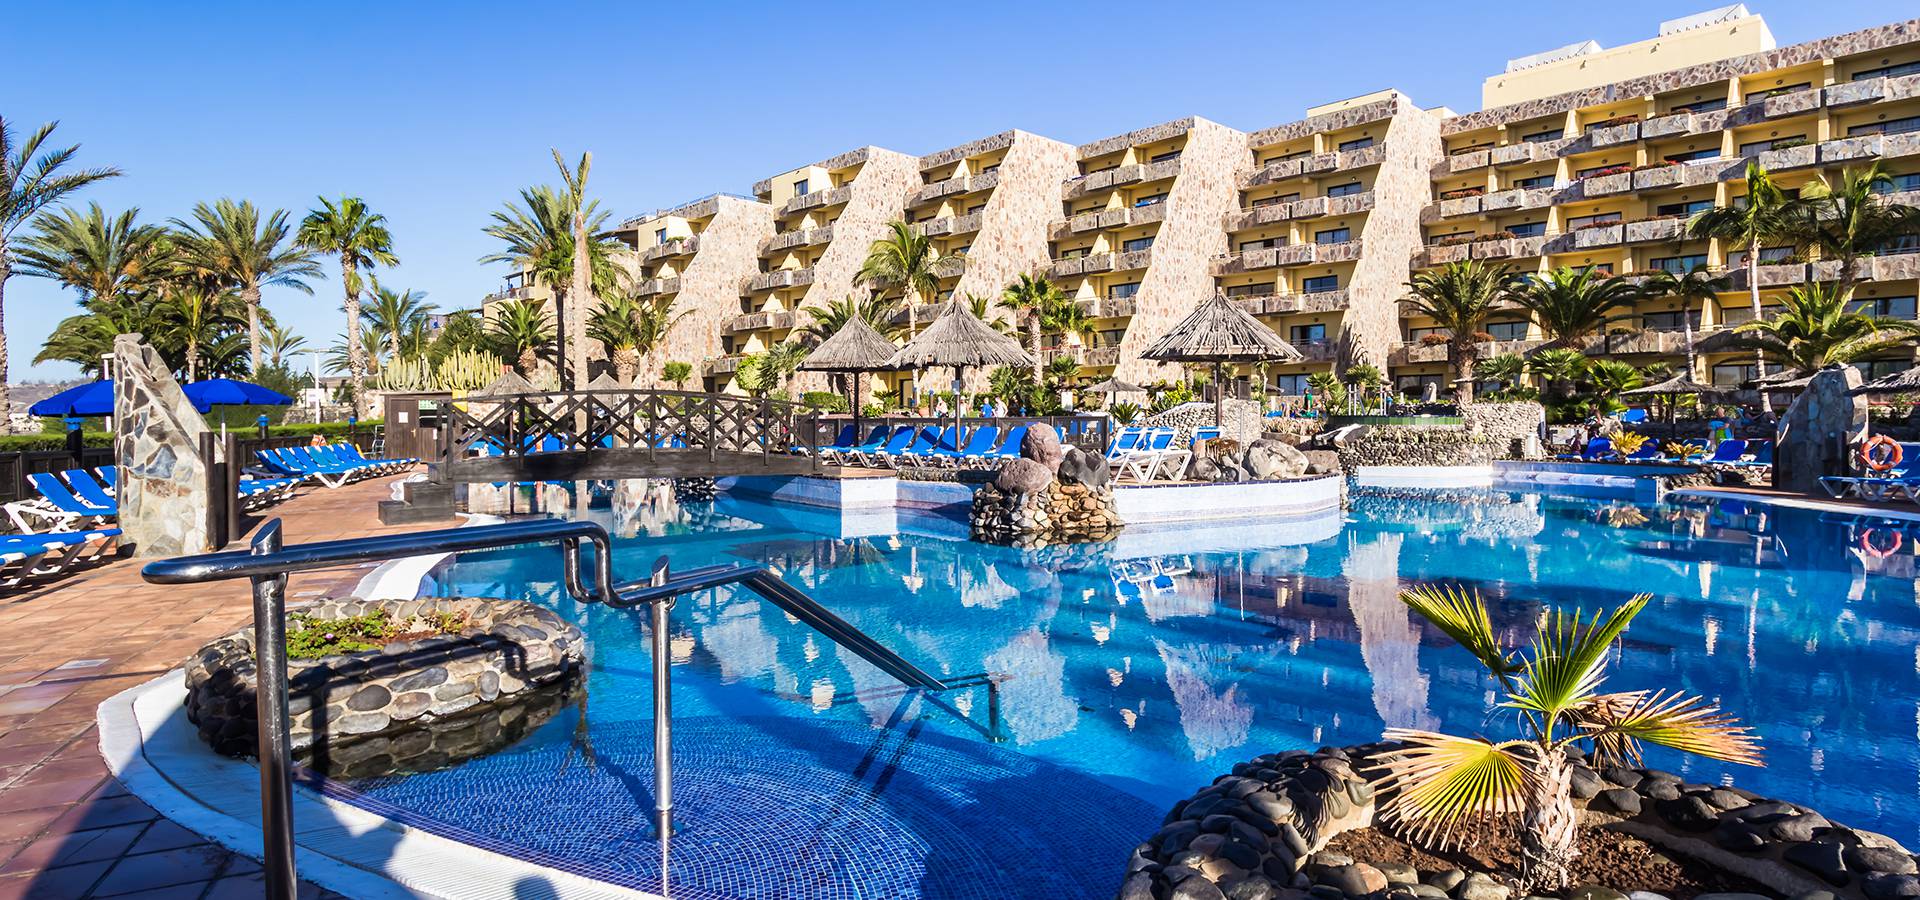 Hotel BlueBay Beach Club**** en Gran Canaria, Web oficial